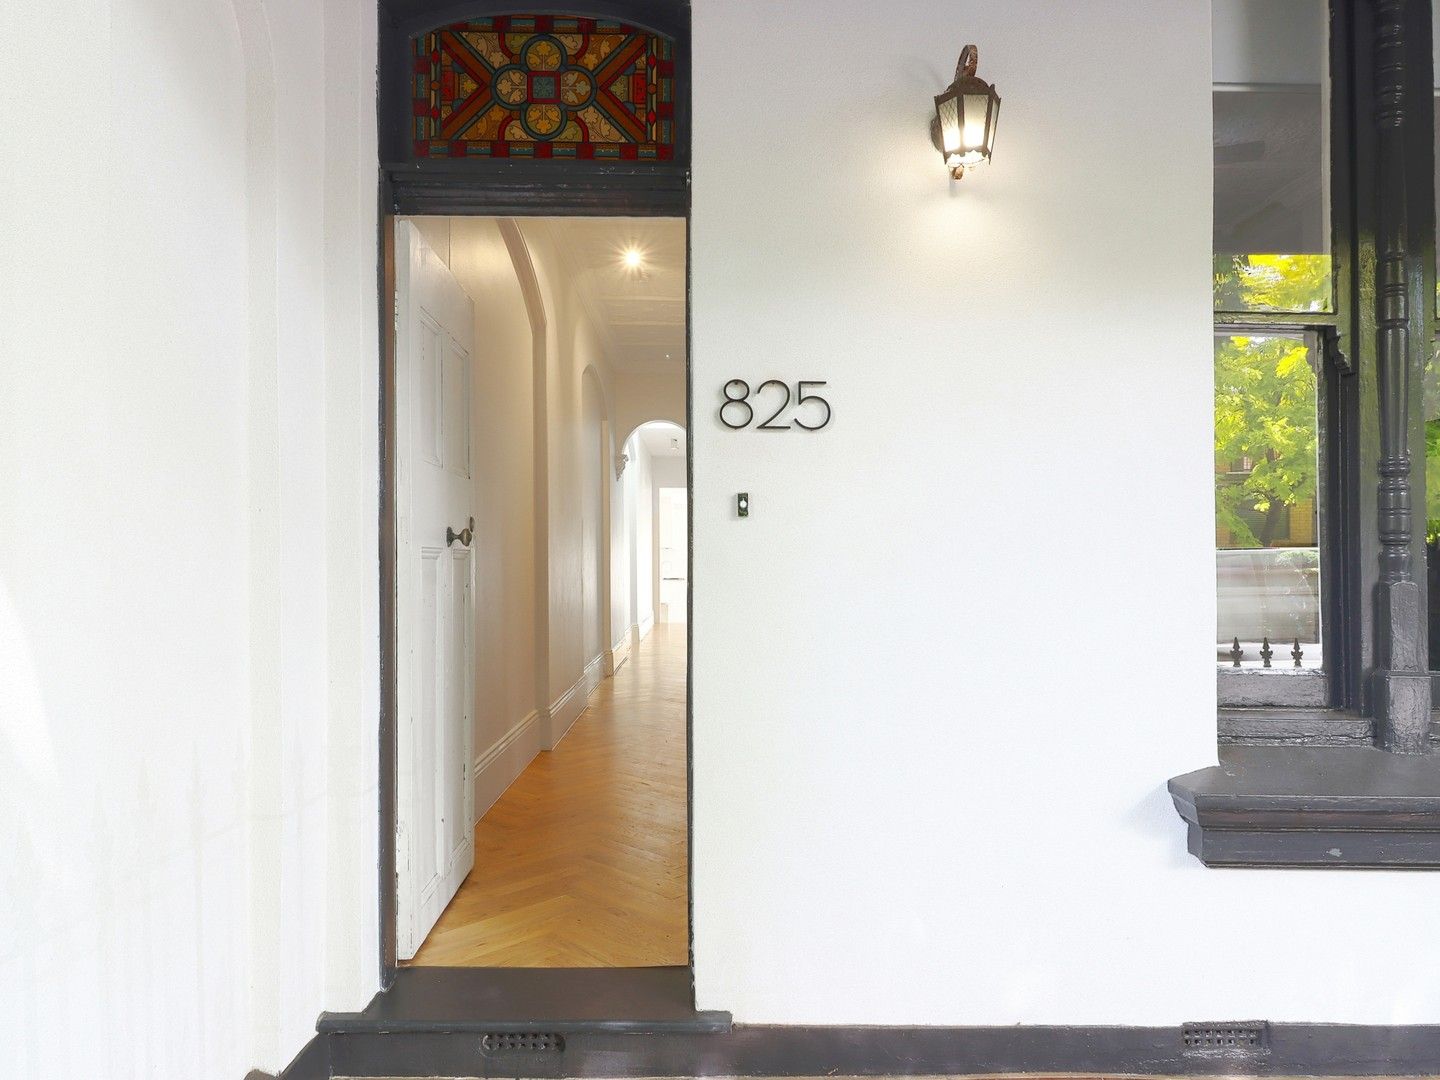 3 bedrooms House in 825 Bourke Street REDFERN NSW, 2016